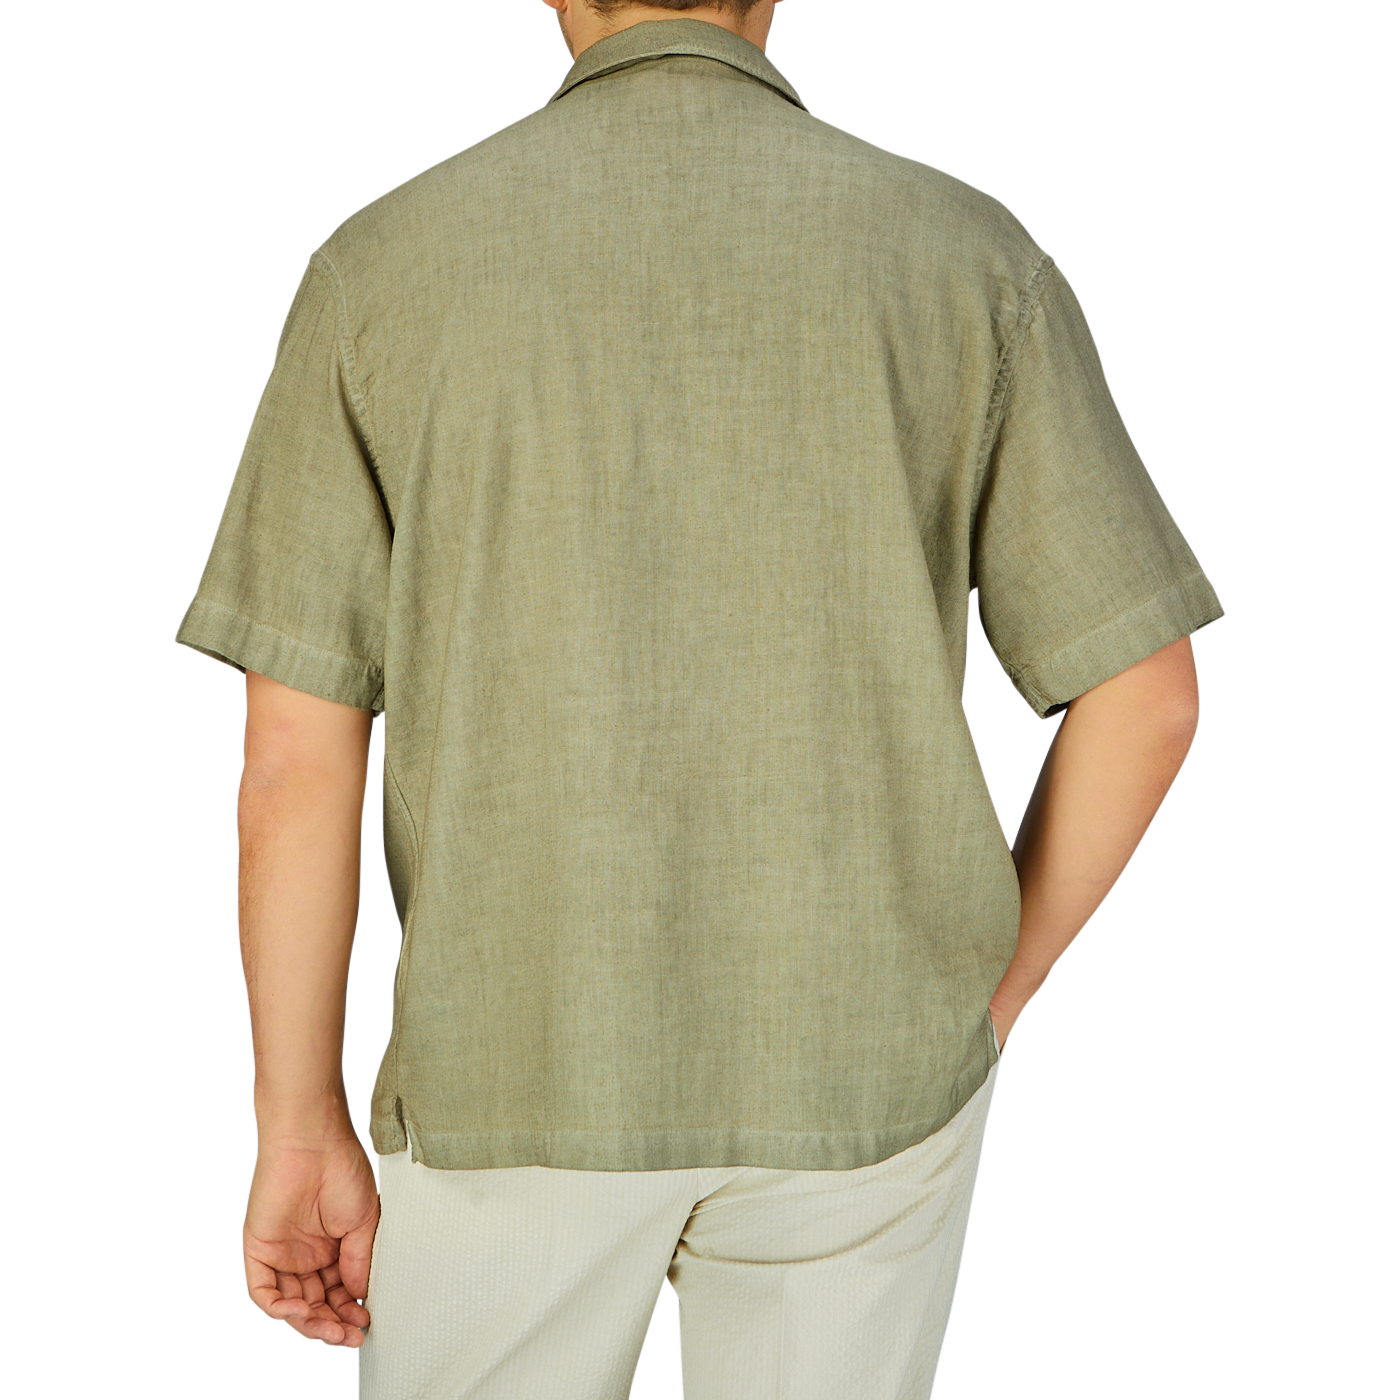 A man viewed from behind wearing an Altea Moss Green Linen Blend Camp Collar shirt and light-colored pants.